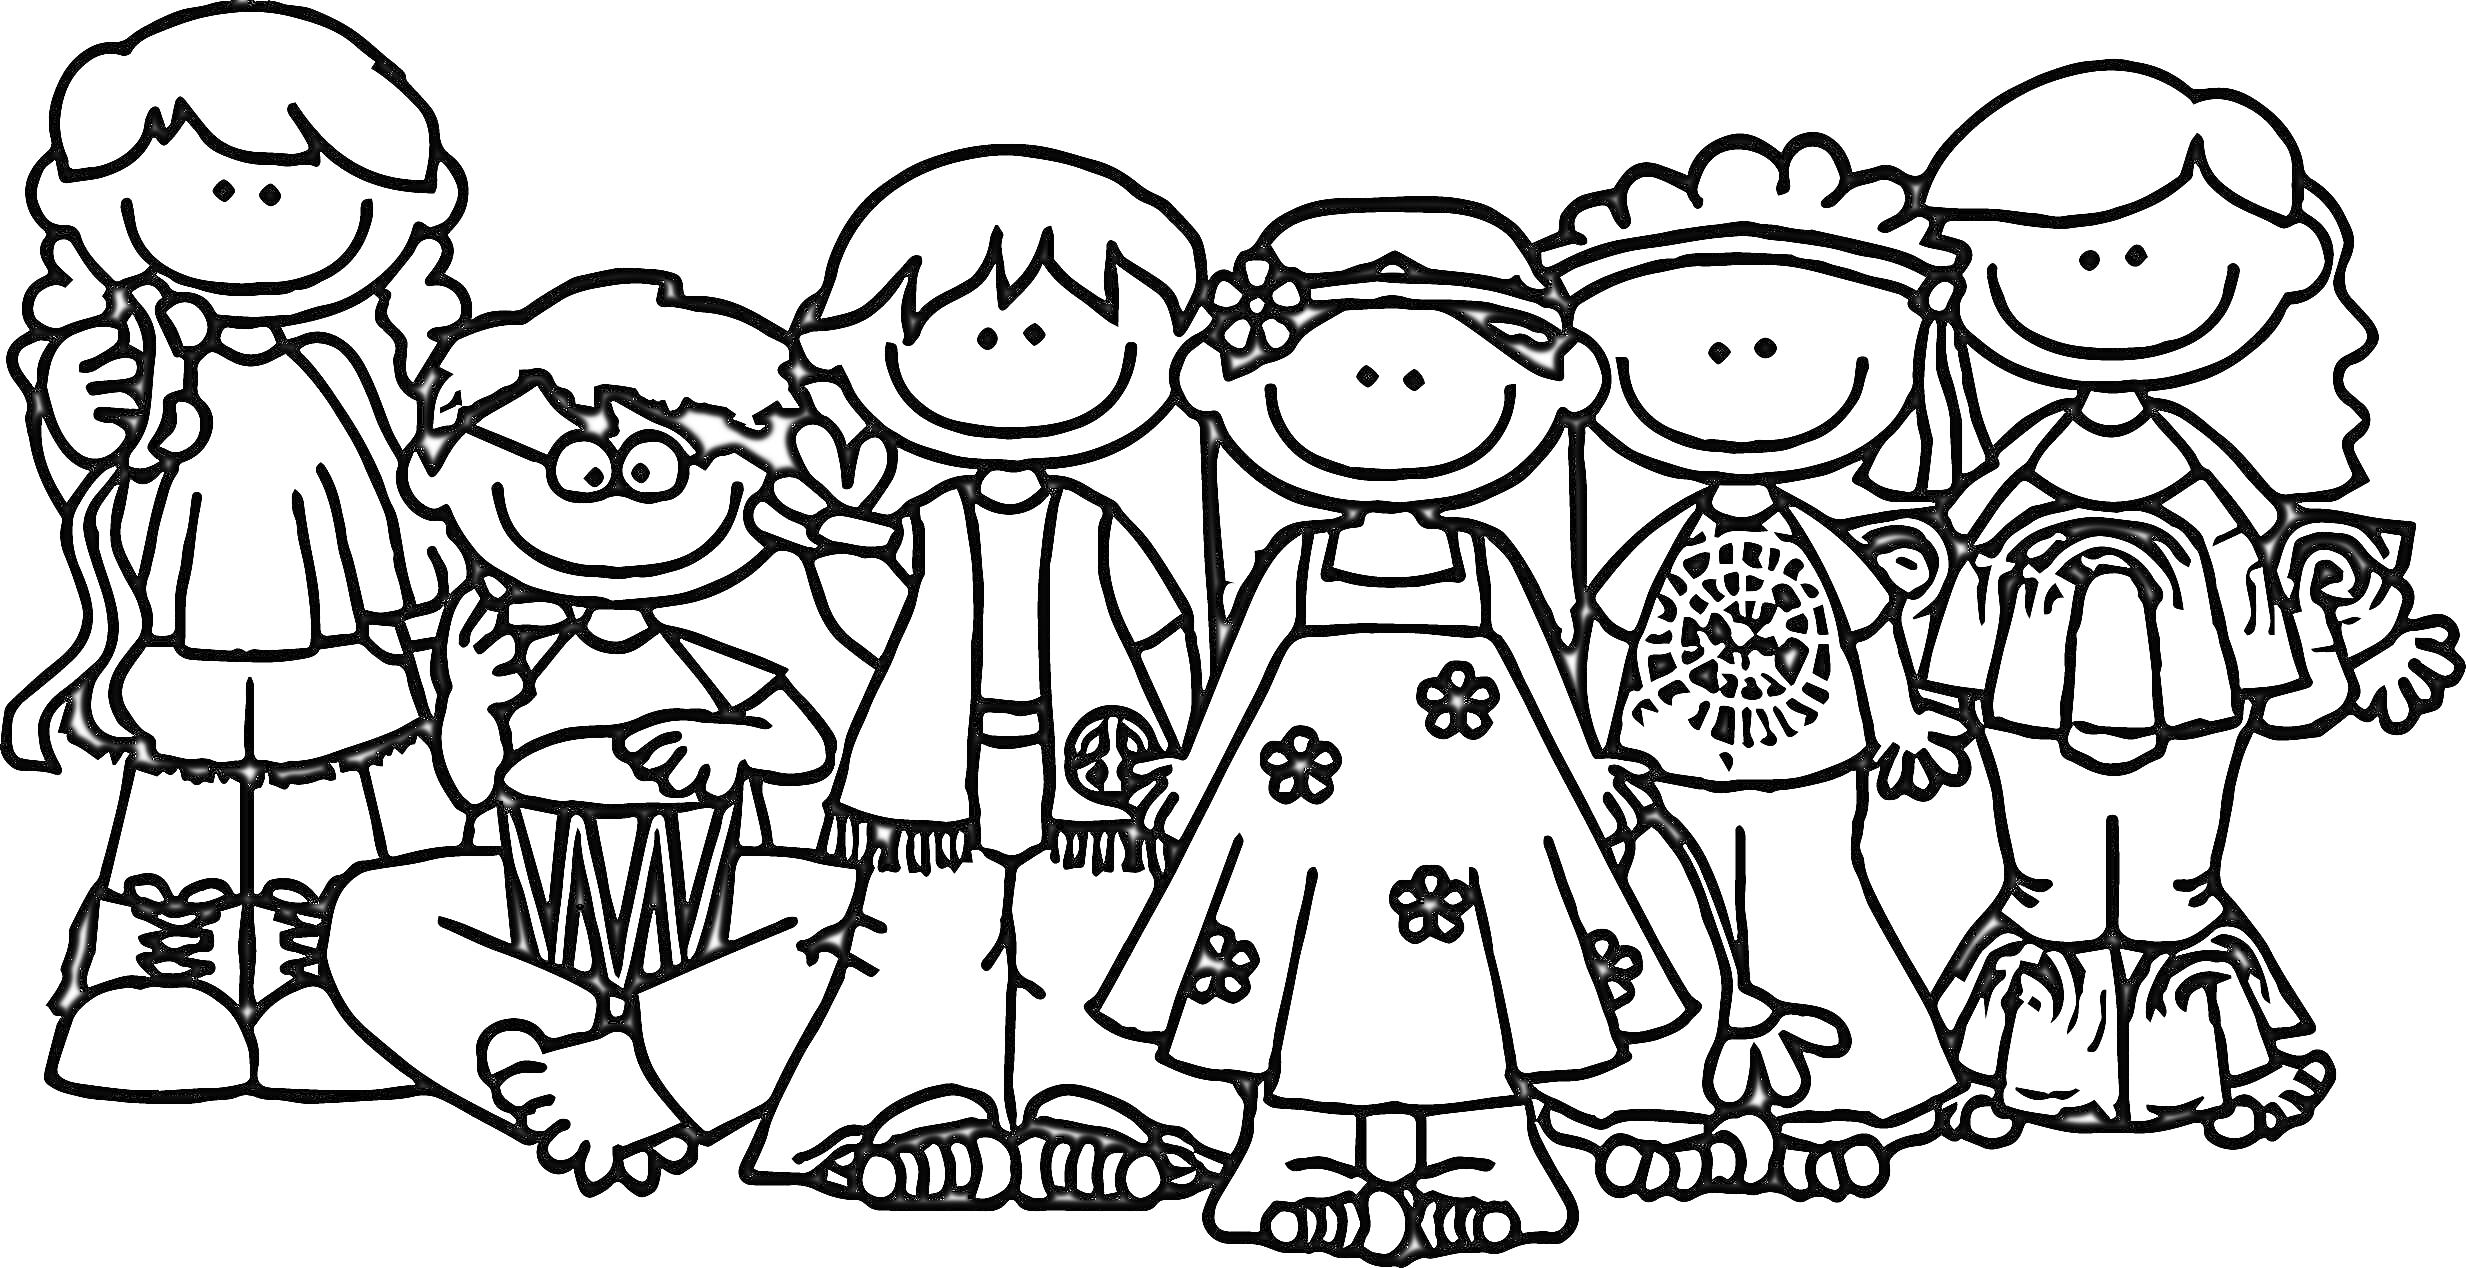 Раскраска Группа детей с разными образами и аксессуарами